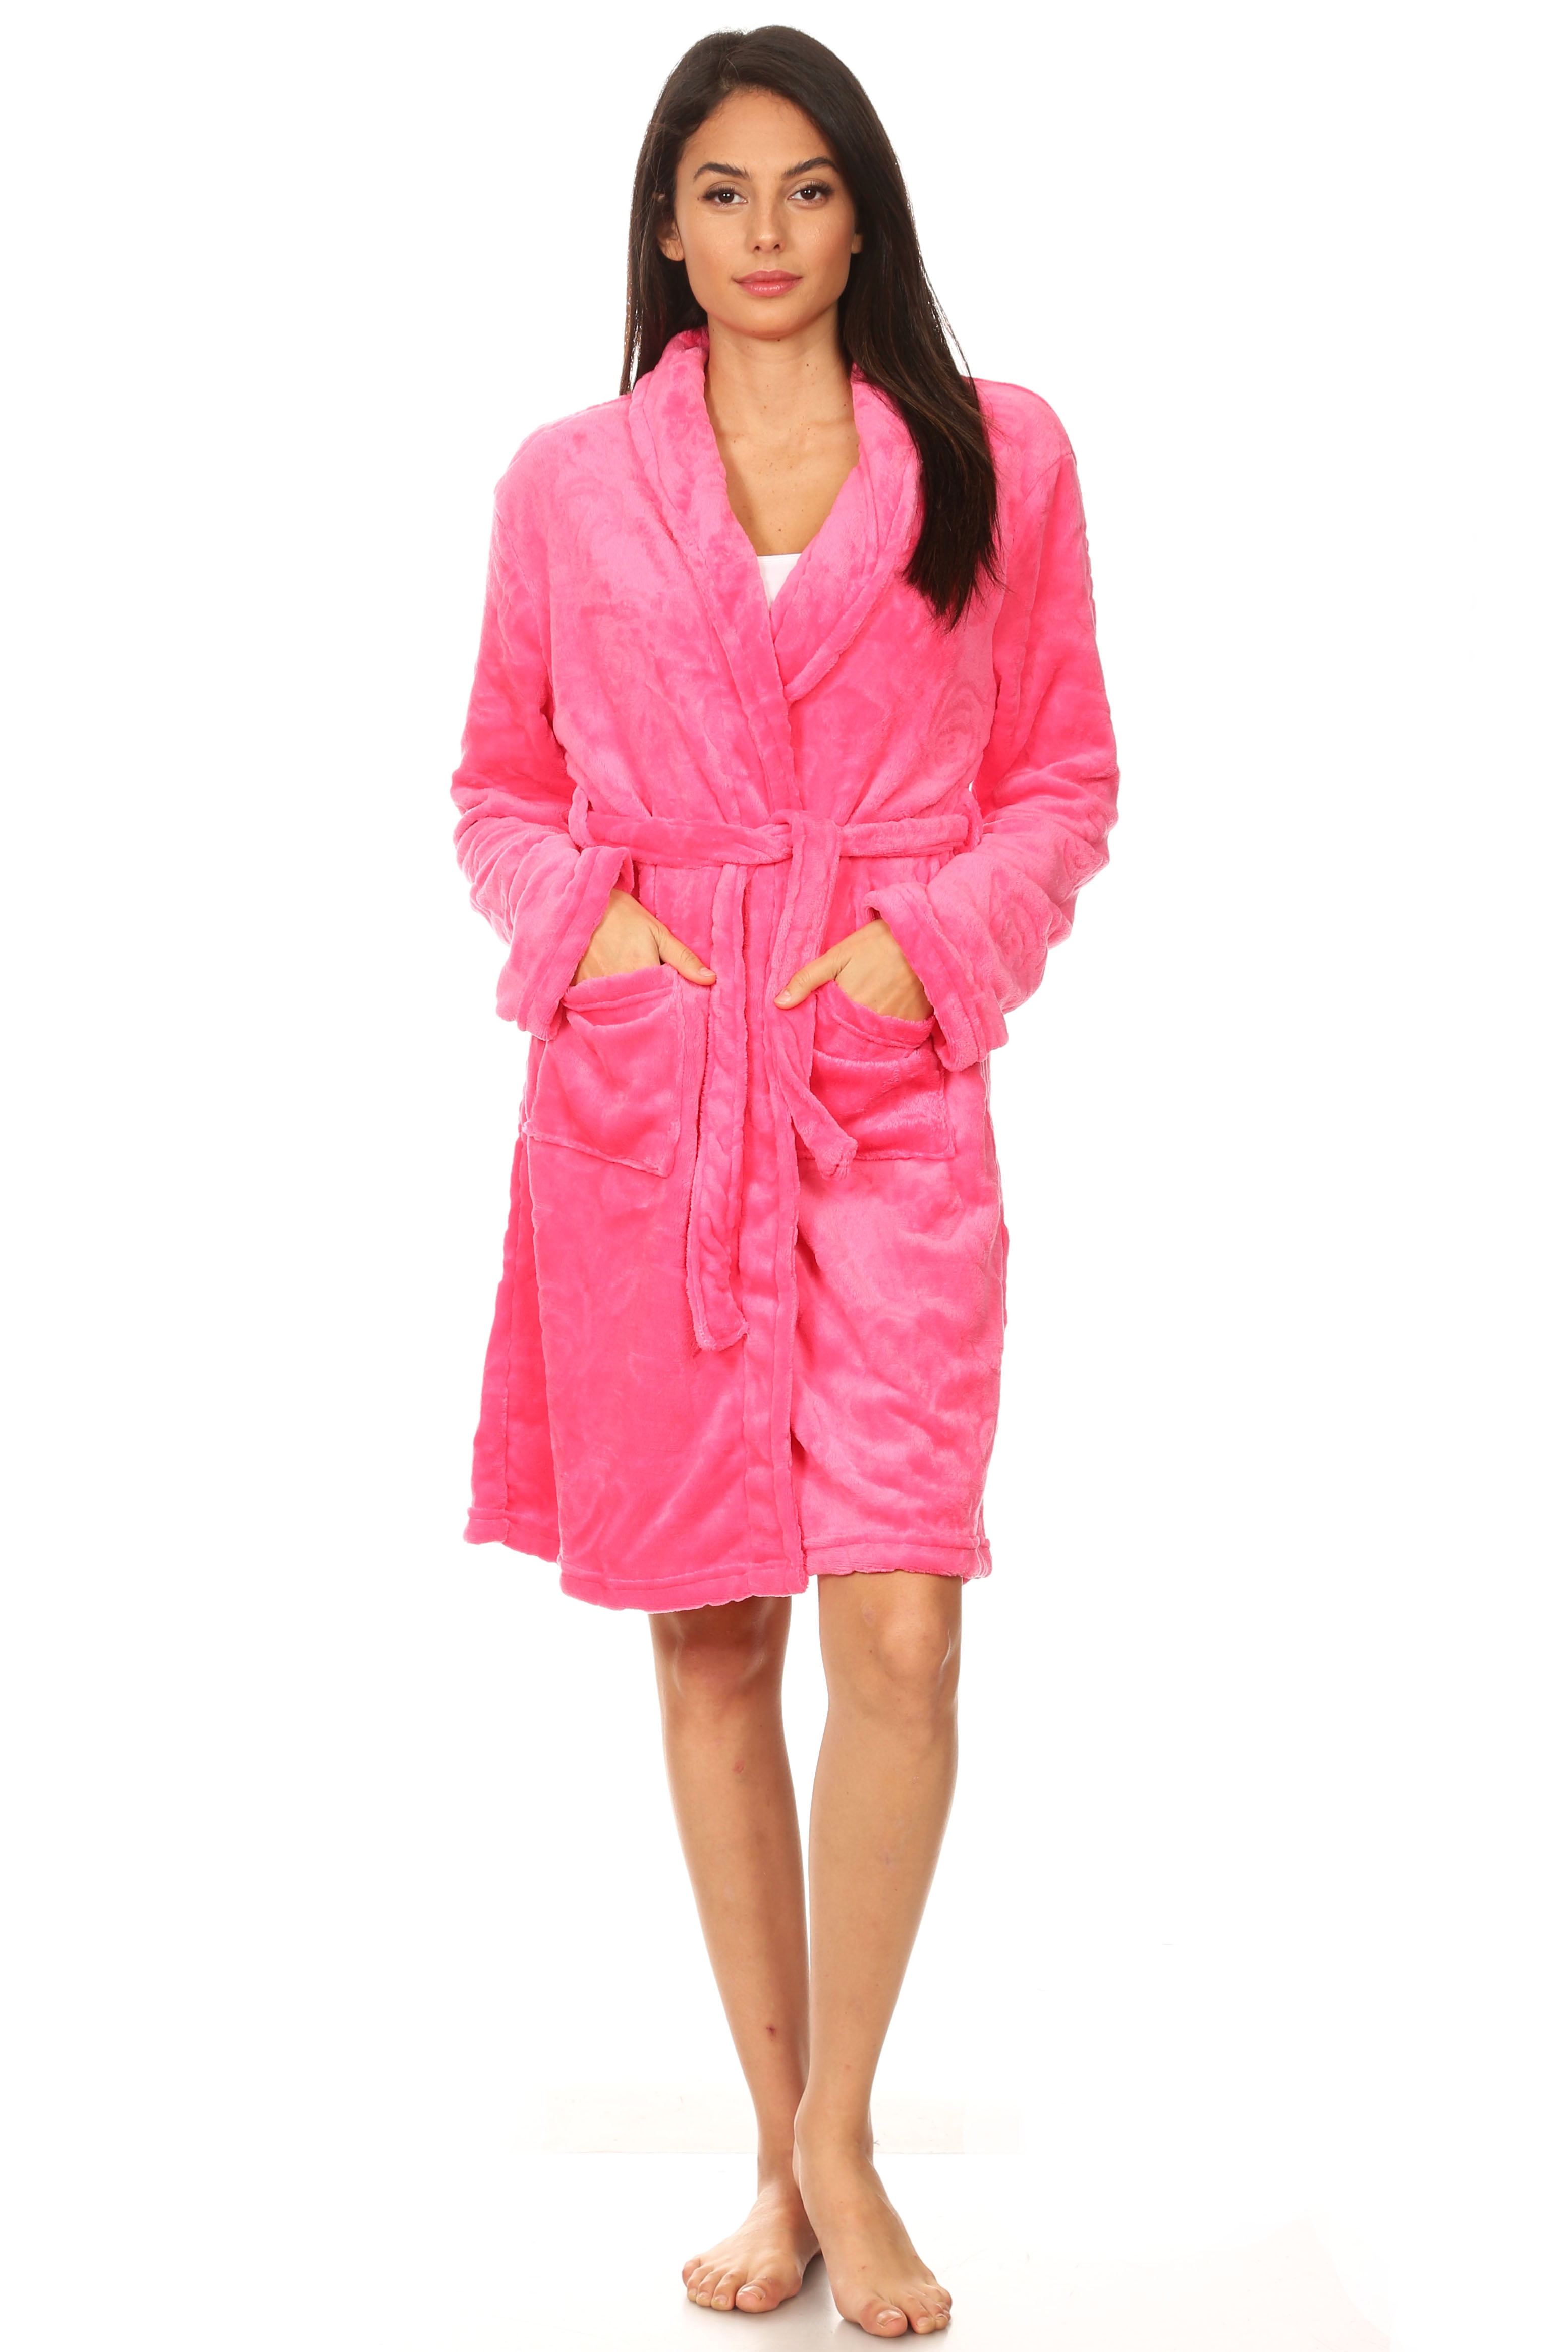 Fashion Brands Group - Women Spa Robe Long Plush Bath Robe Super Soft ...